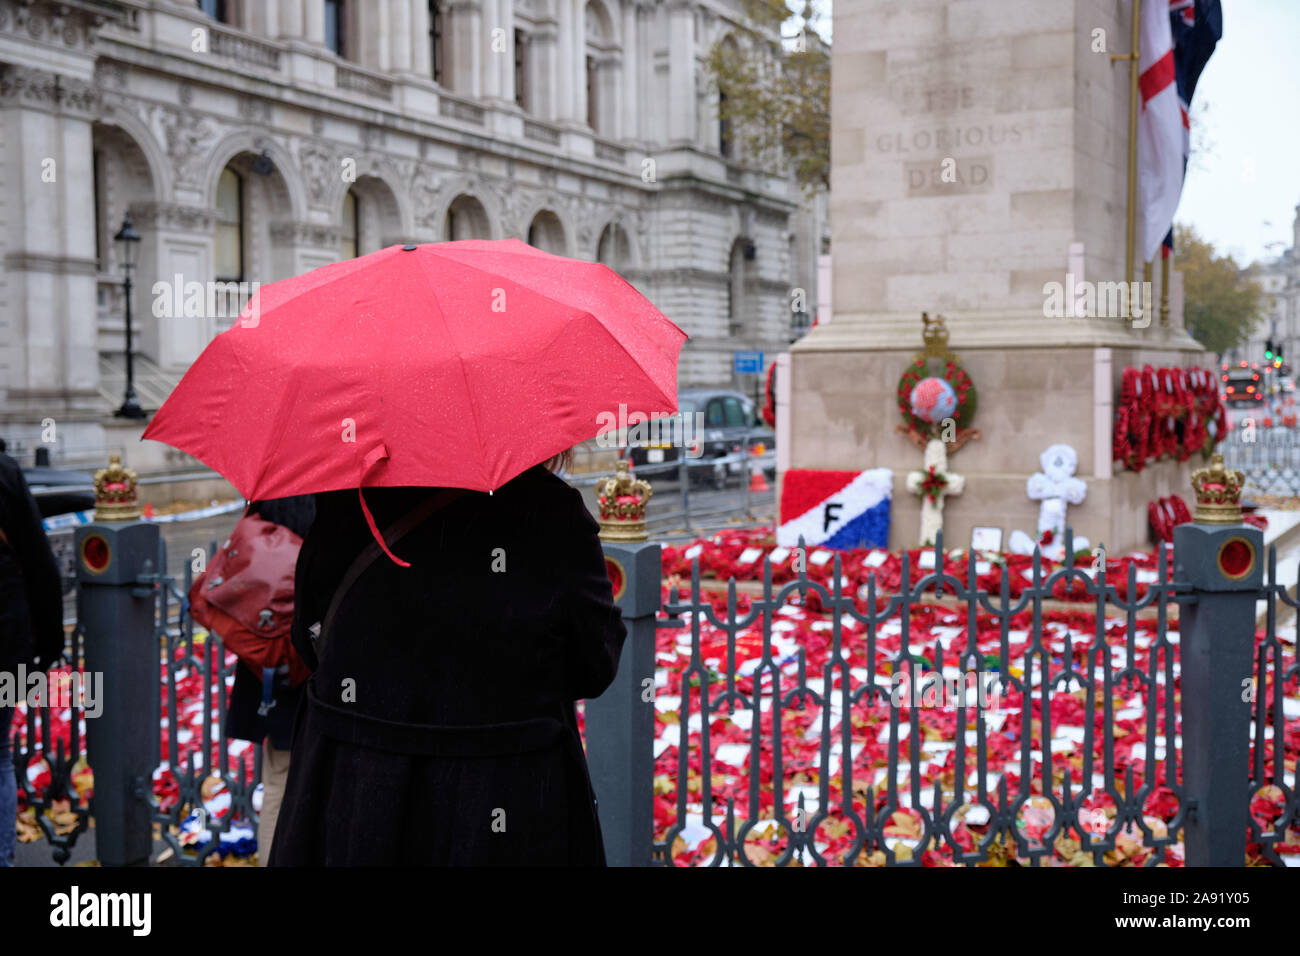 Westminster, Londra, Regno Unito. 12 Nov 2019. In un pomeriggio piovoso a Londra, la gente viene a rendere omaggio agli eroi caduti al Cenotaph, dove le corone sono ancora raccolte dalle cerimonie del fine settimana. Foto Stock